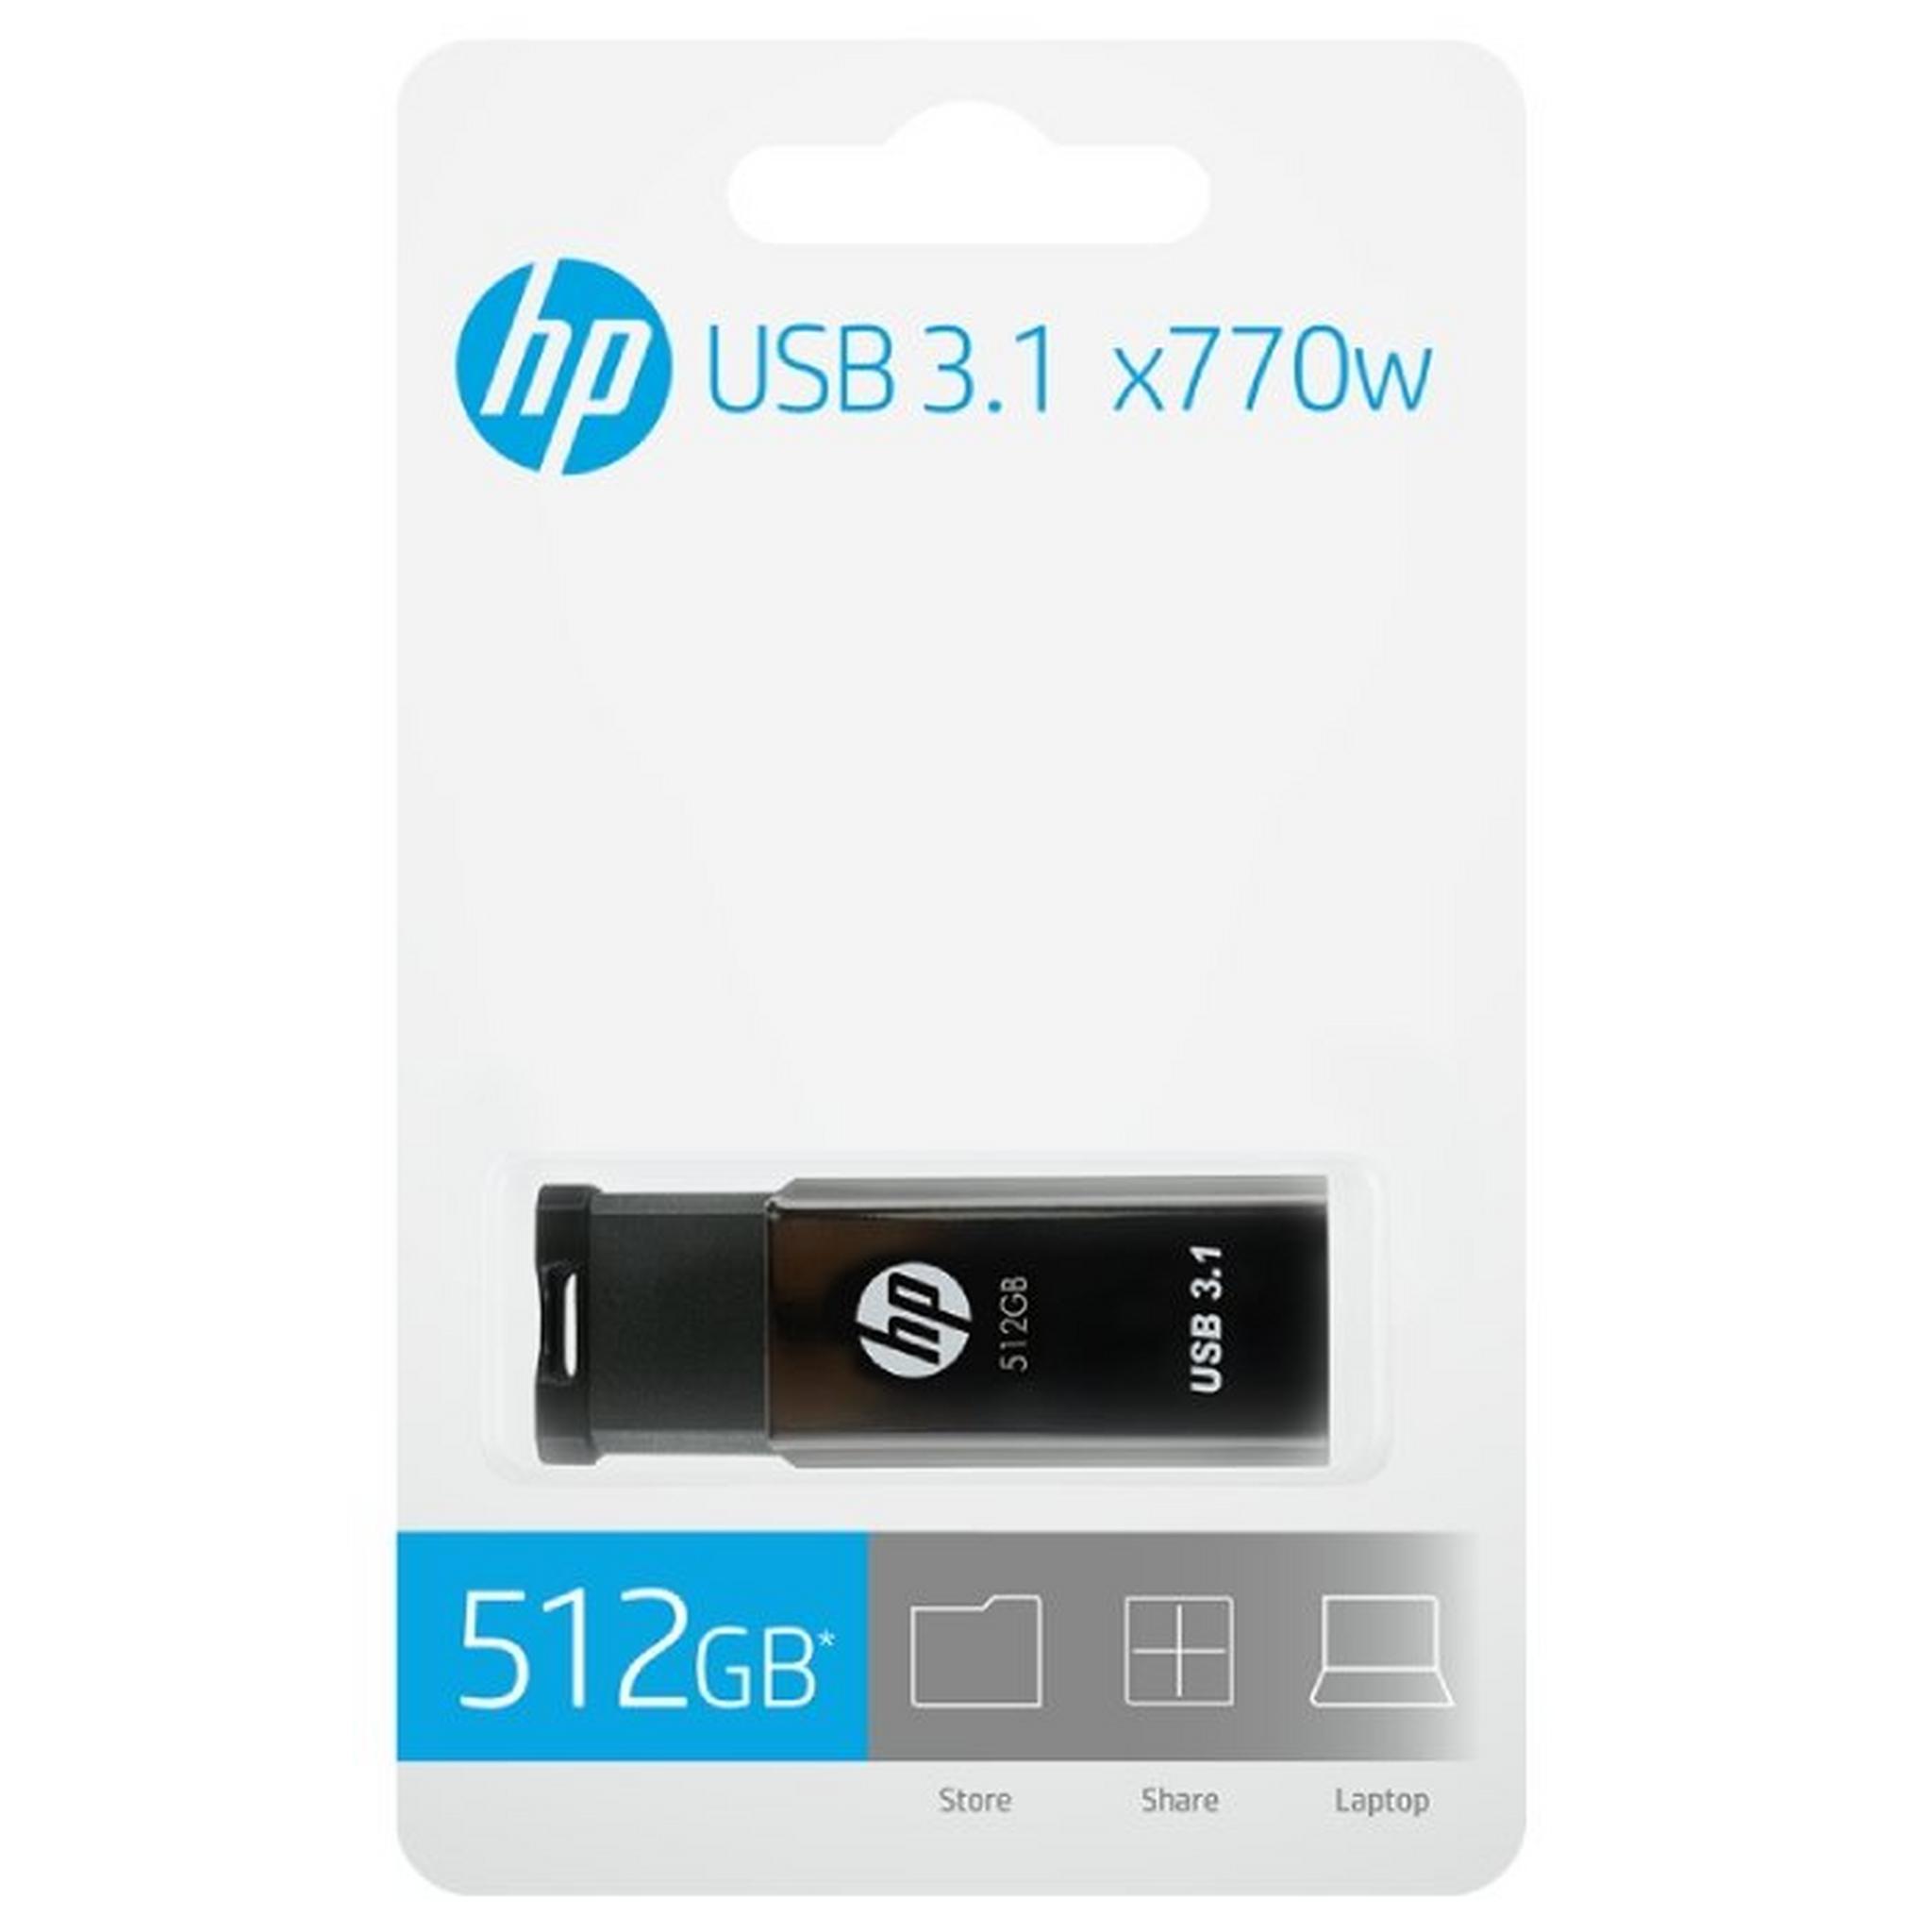 HP 3.1 512GB USB Flash Drive (X770W)